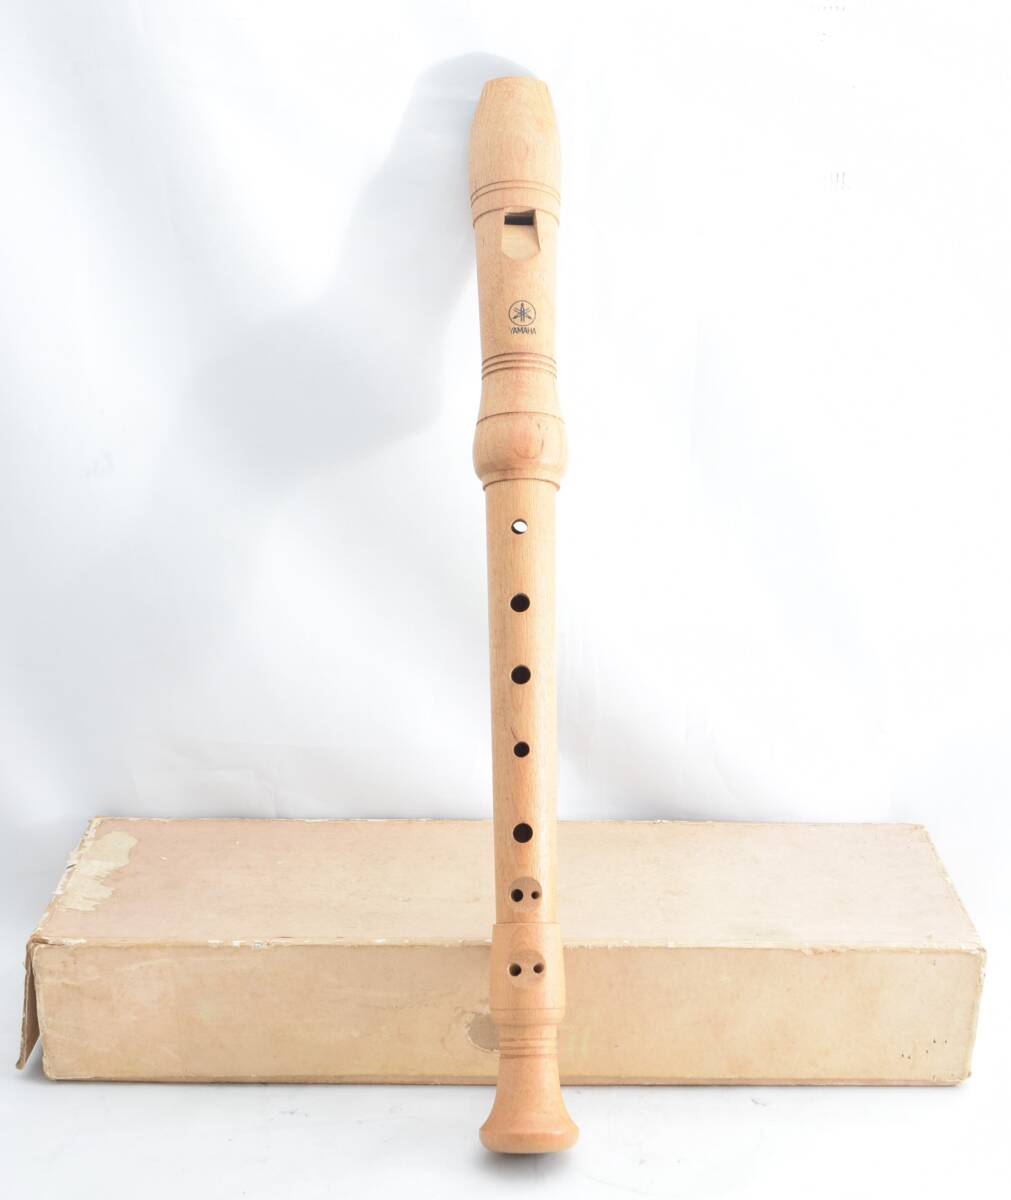 H*YAMAHA Yamaha сопрано блок-флейта YRS-61 сделано в Японии из дерева rental терроризм дерево музыкальные инструменты духовые инструменты *